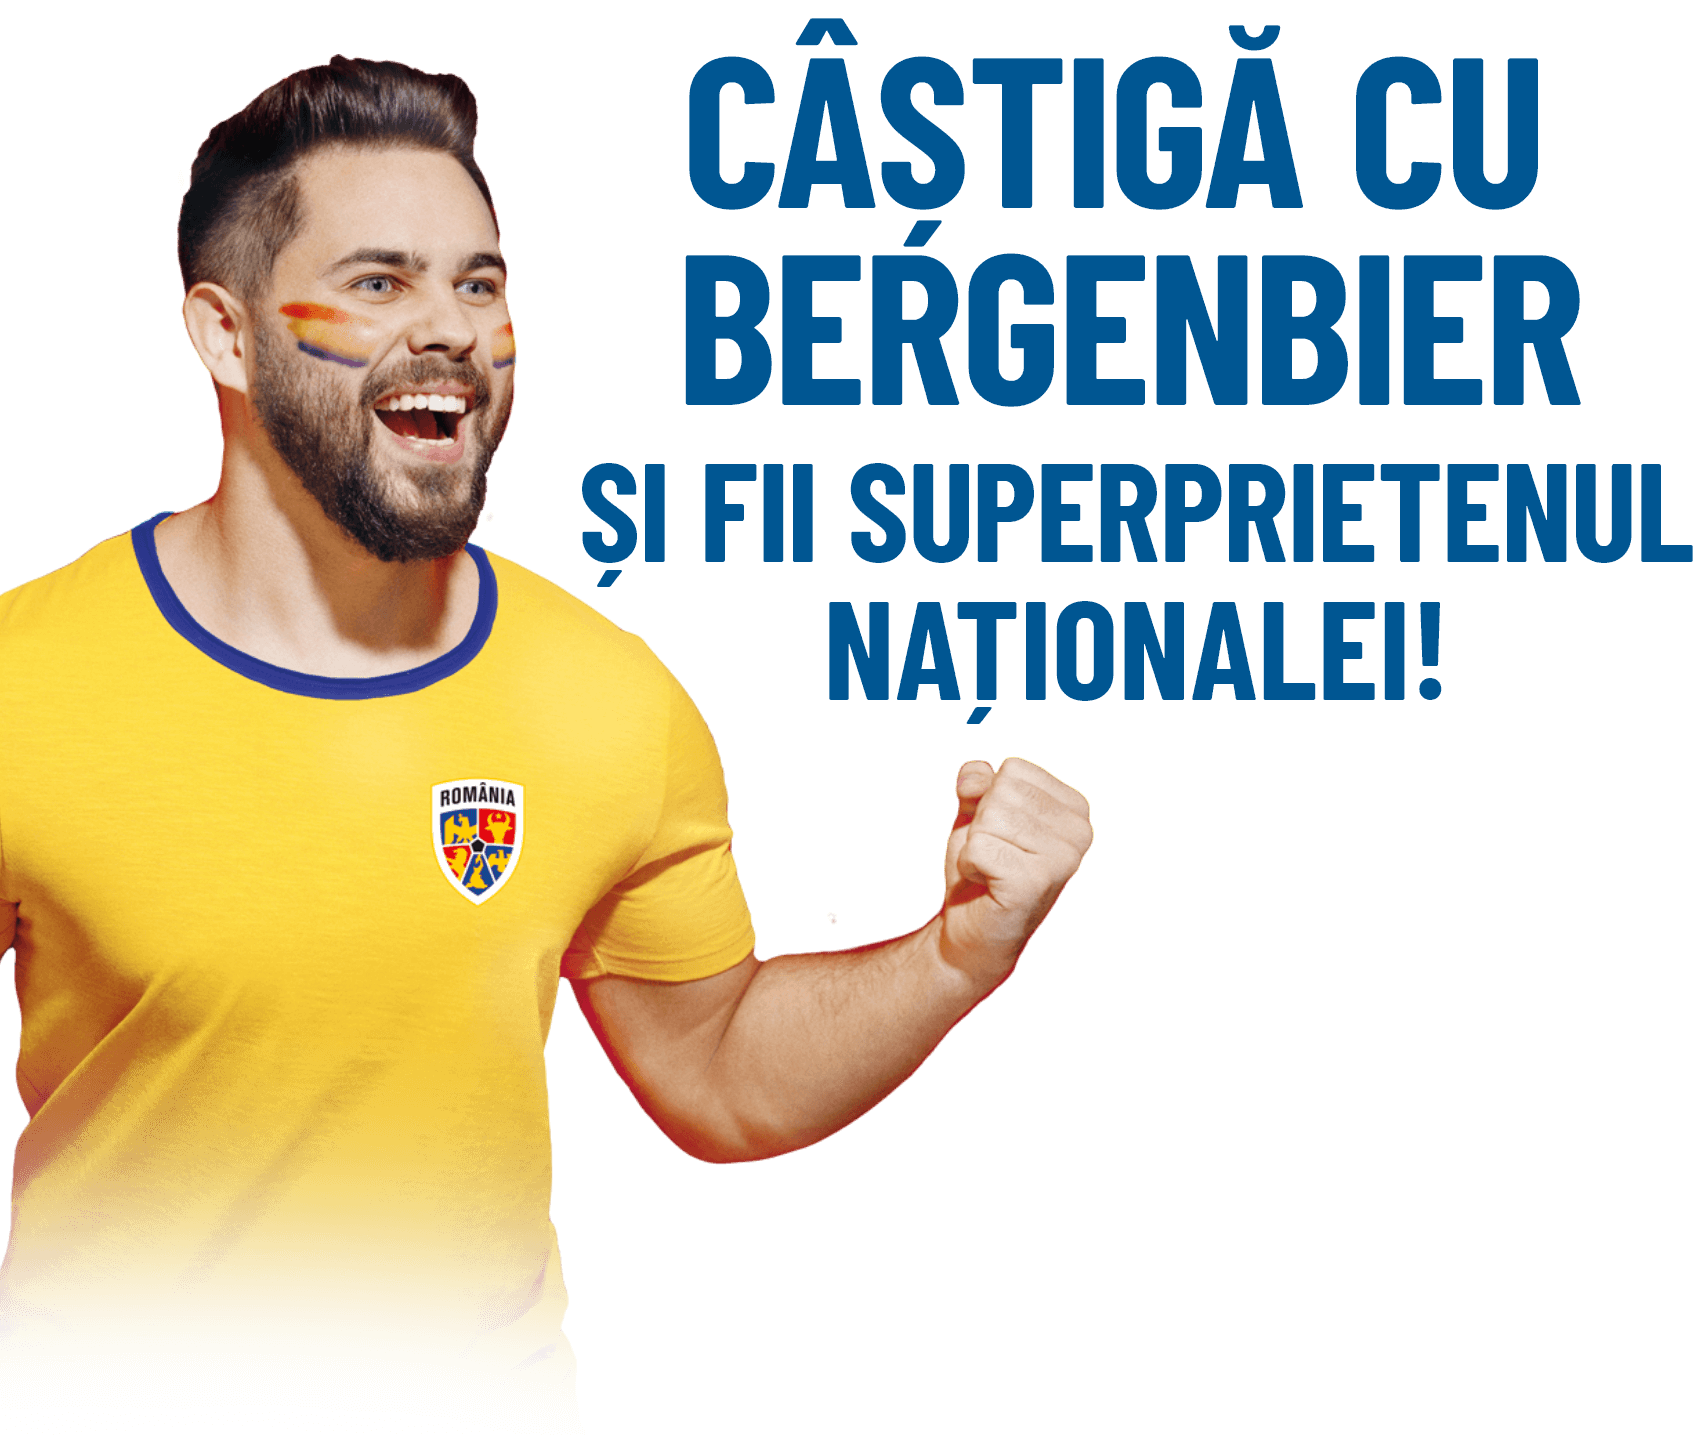 Câștigă cu bergenbier și fii superprietenul naționalei!